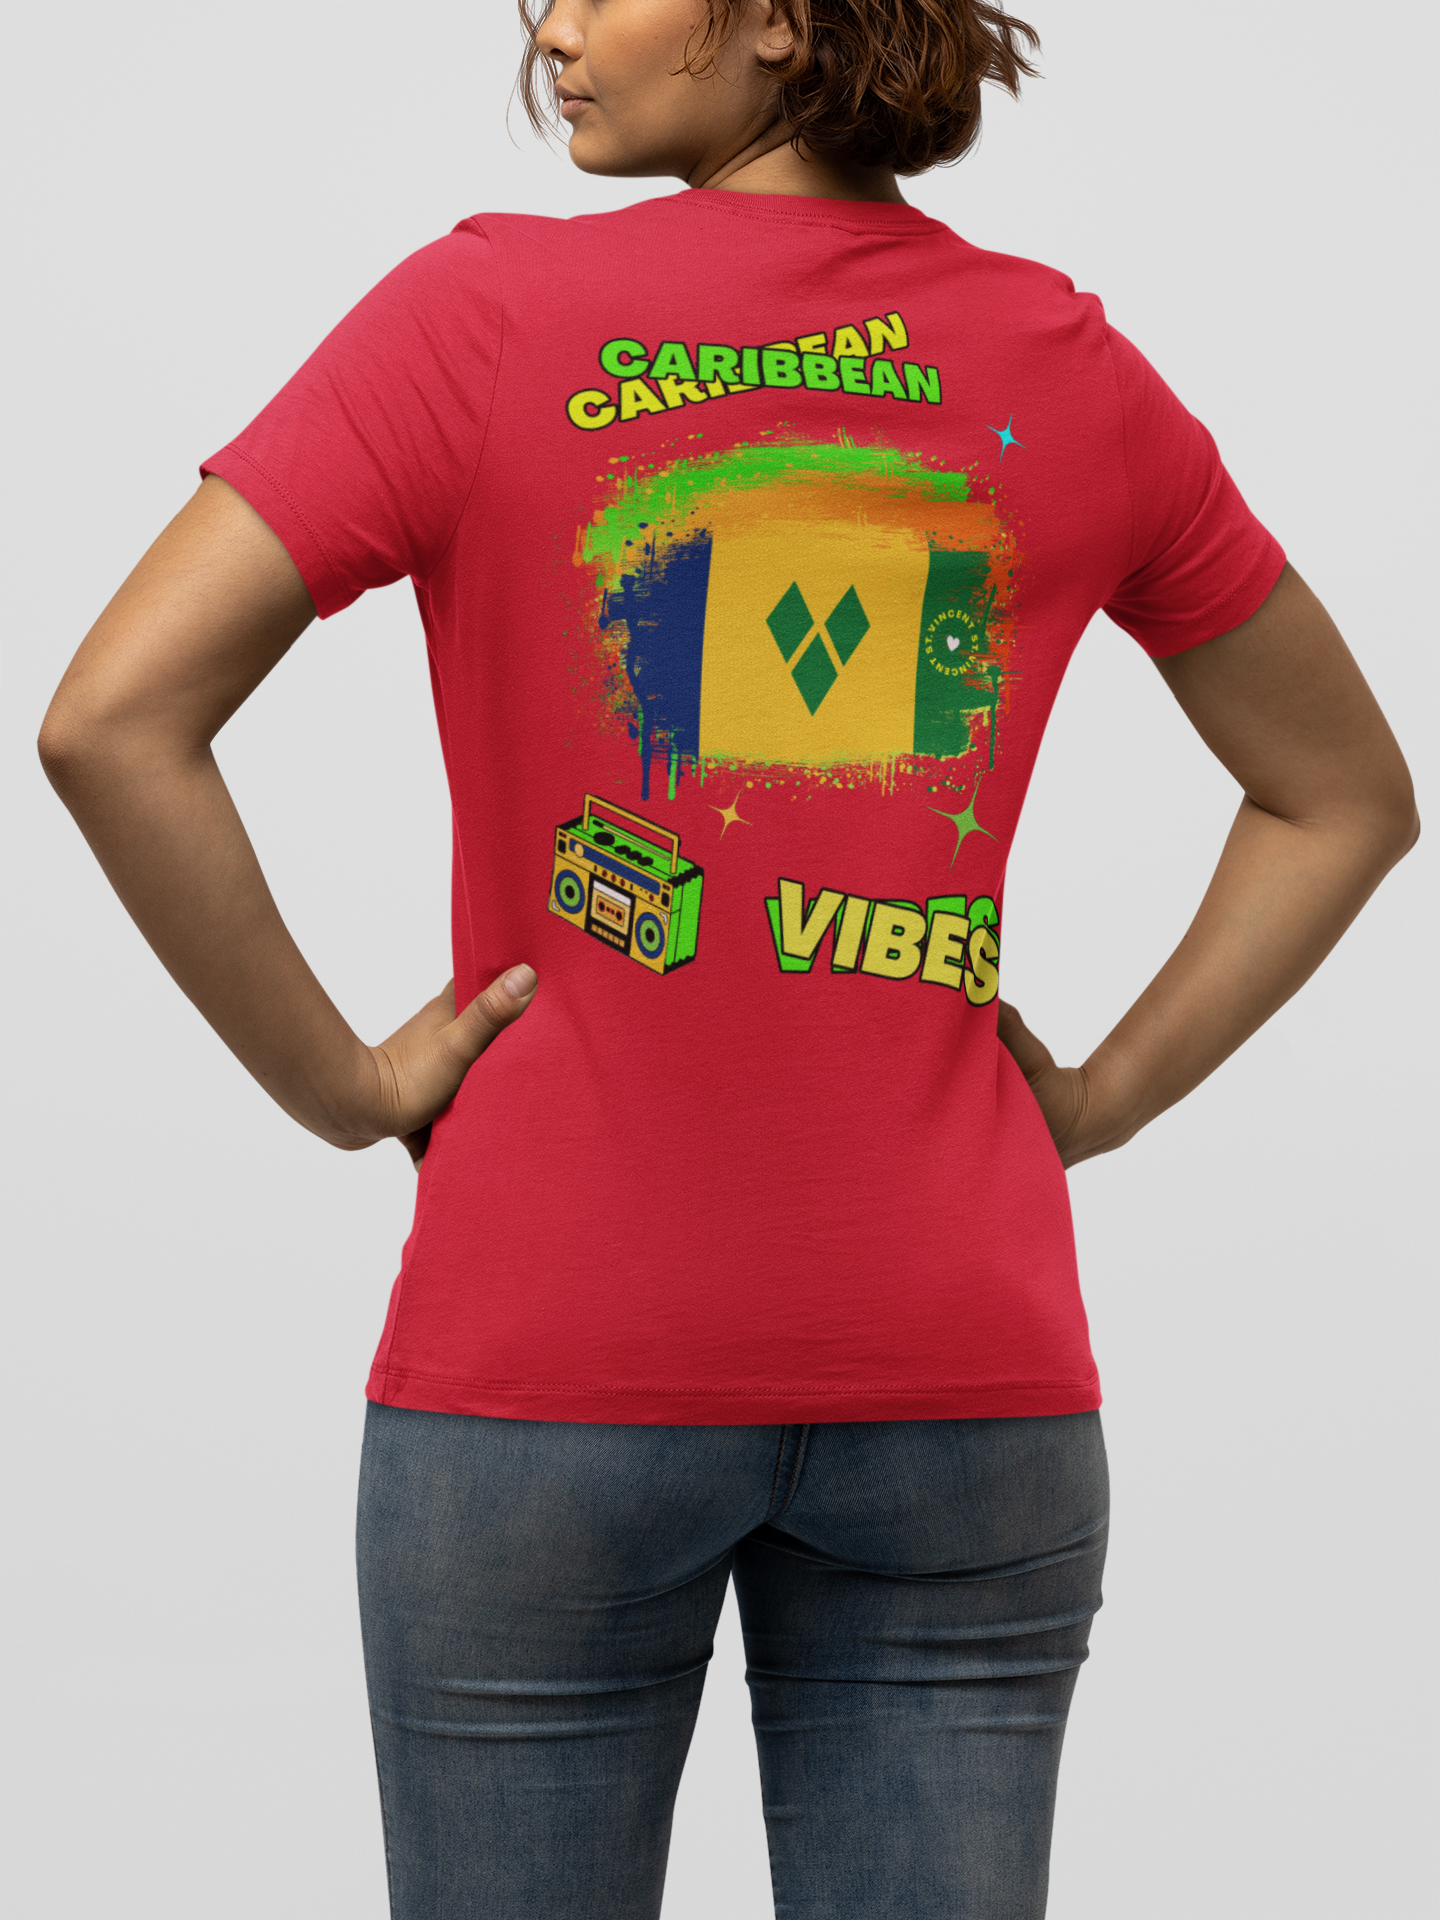 Adult Caribbean Vibes T-shirt - St. Vincent